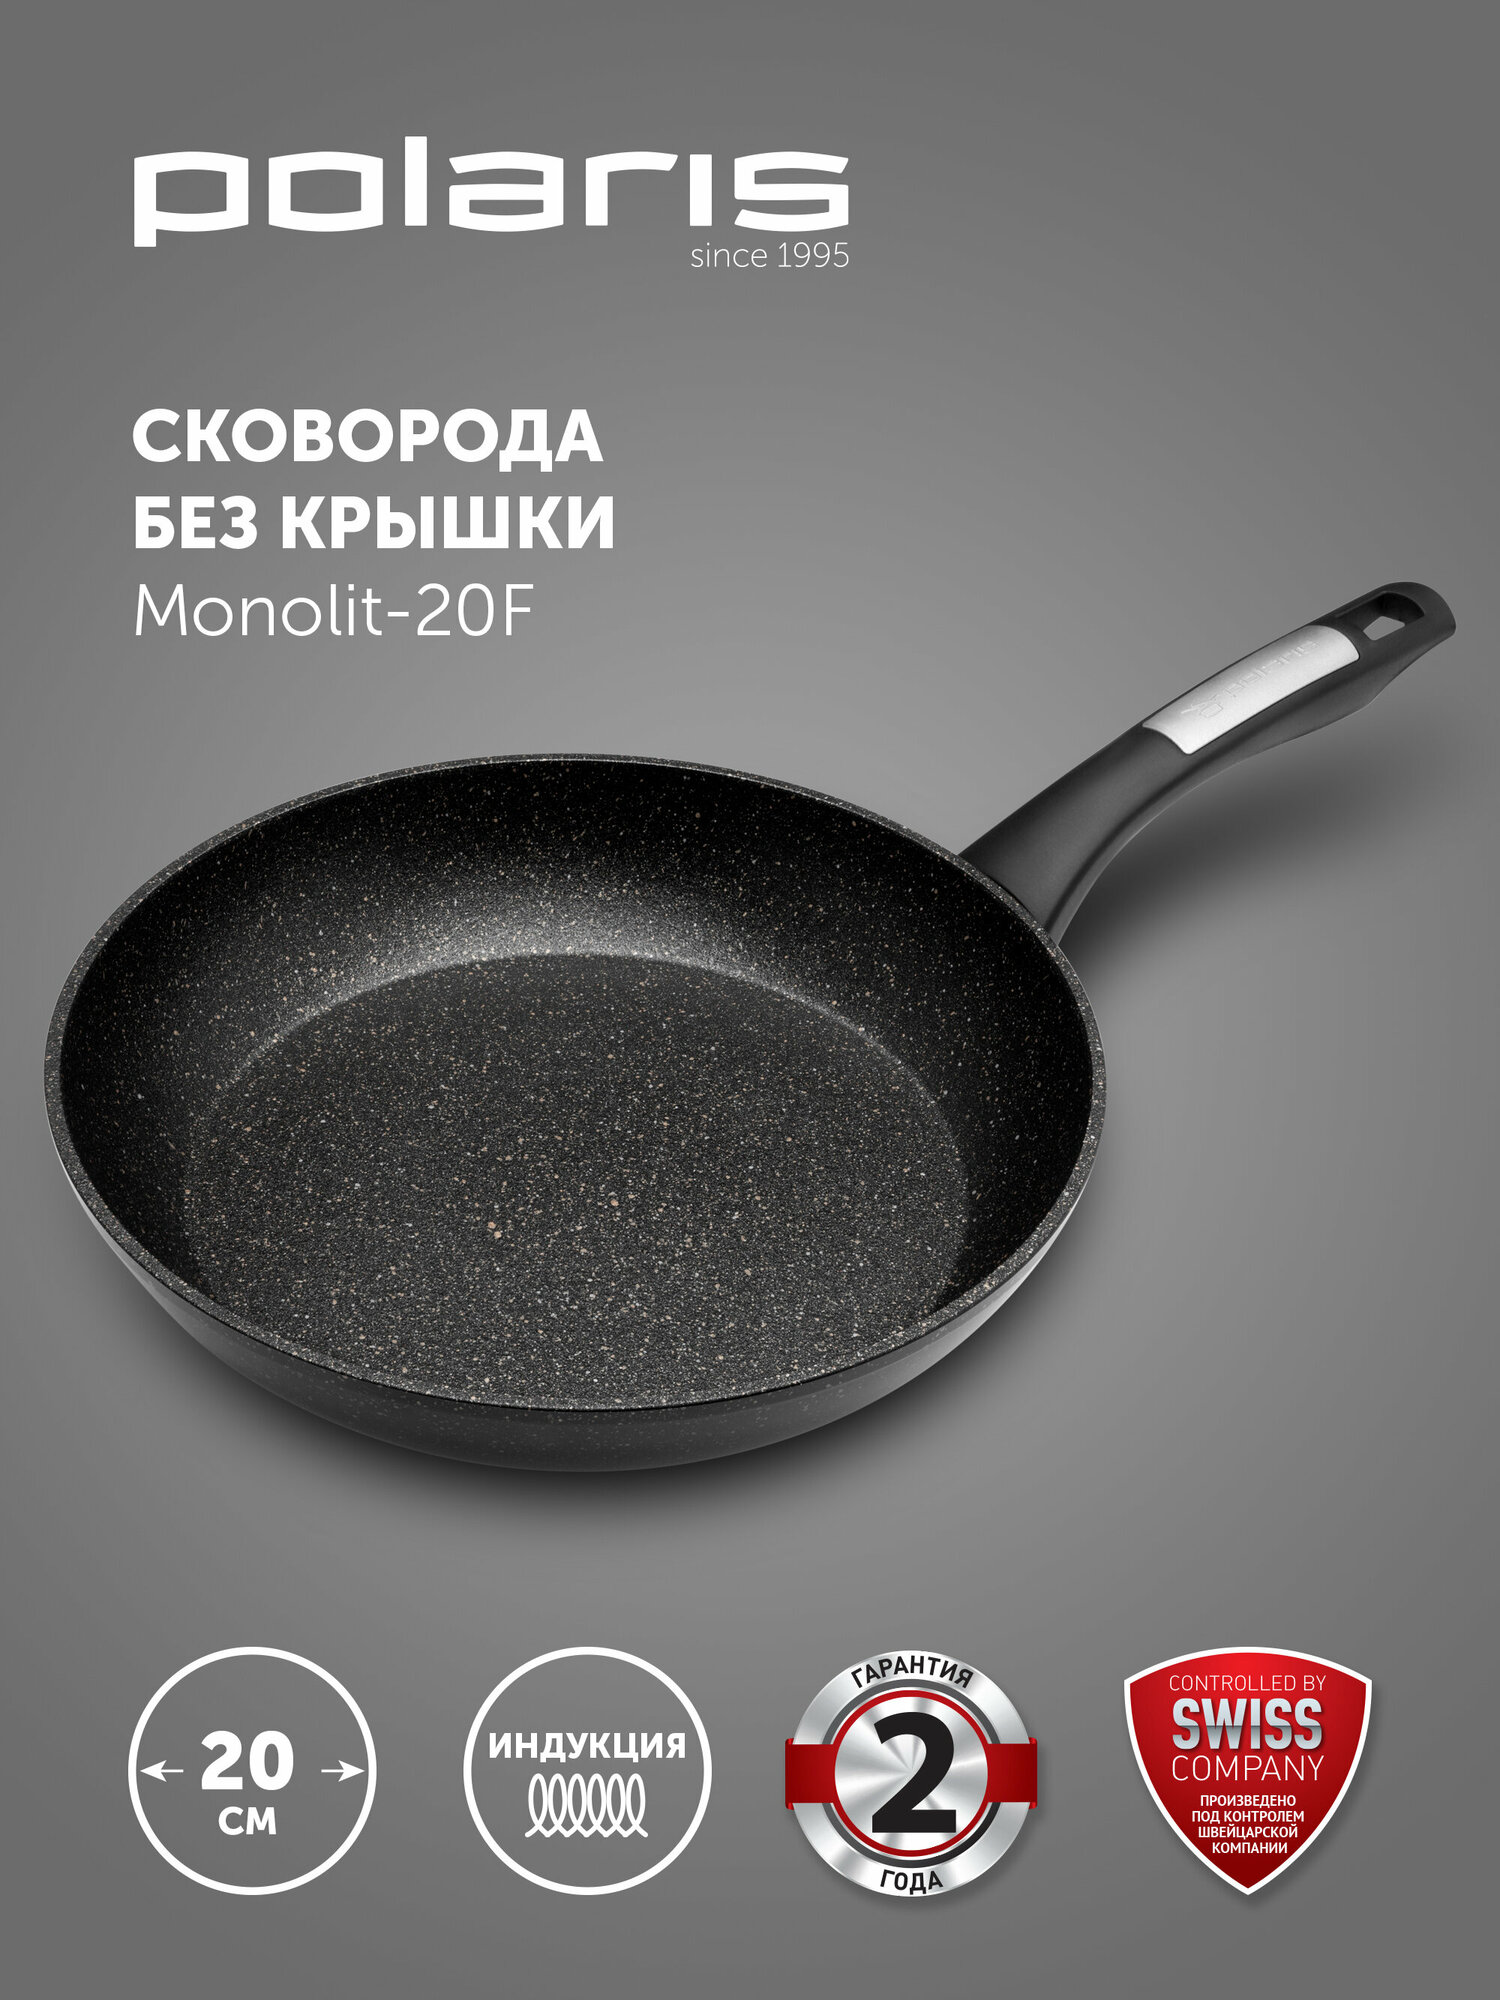 Сковорода Monolit-20F ков. ал, 20 см (POLARIS)